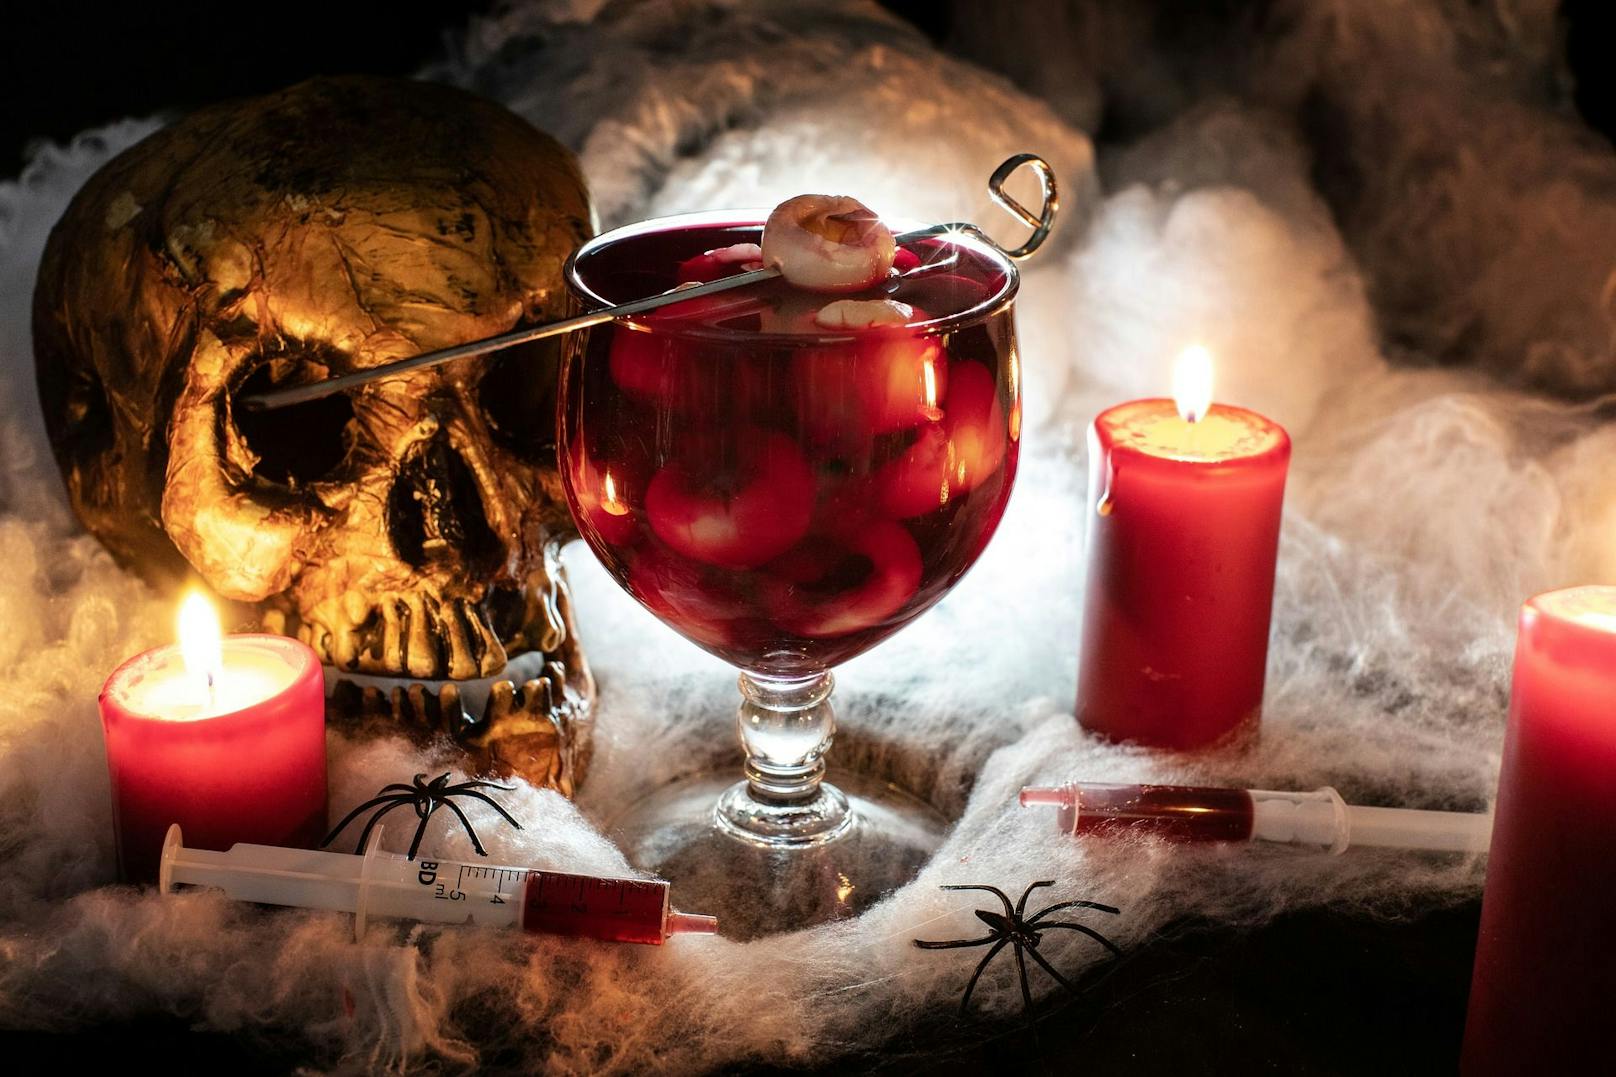 Blut und Augäpfel, die perfekten Zutaten für einen schaurigen Halloween-Cocktail.